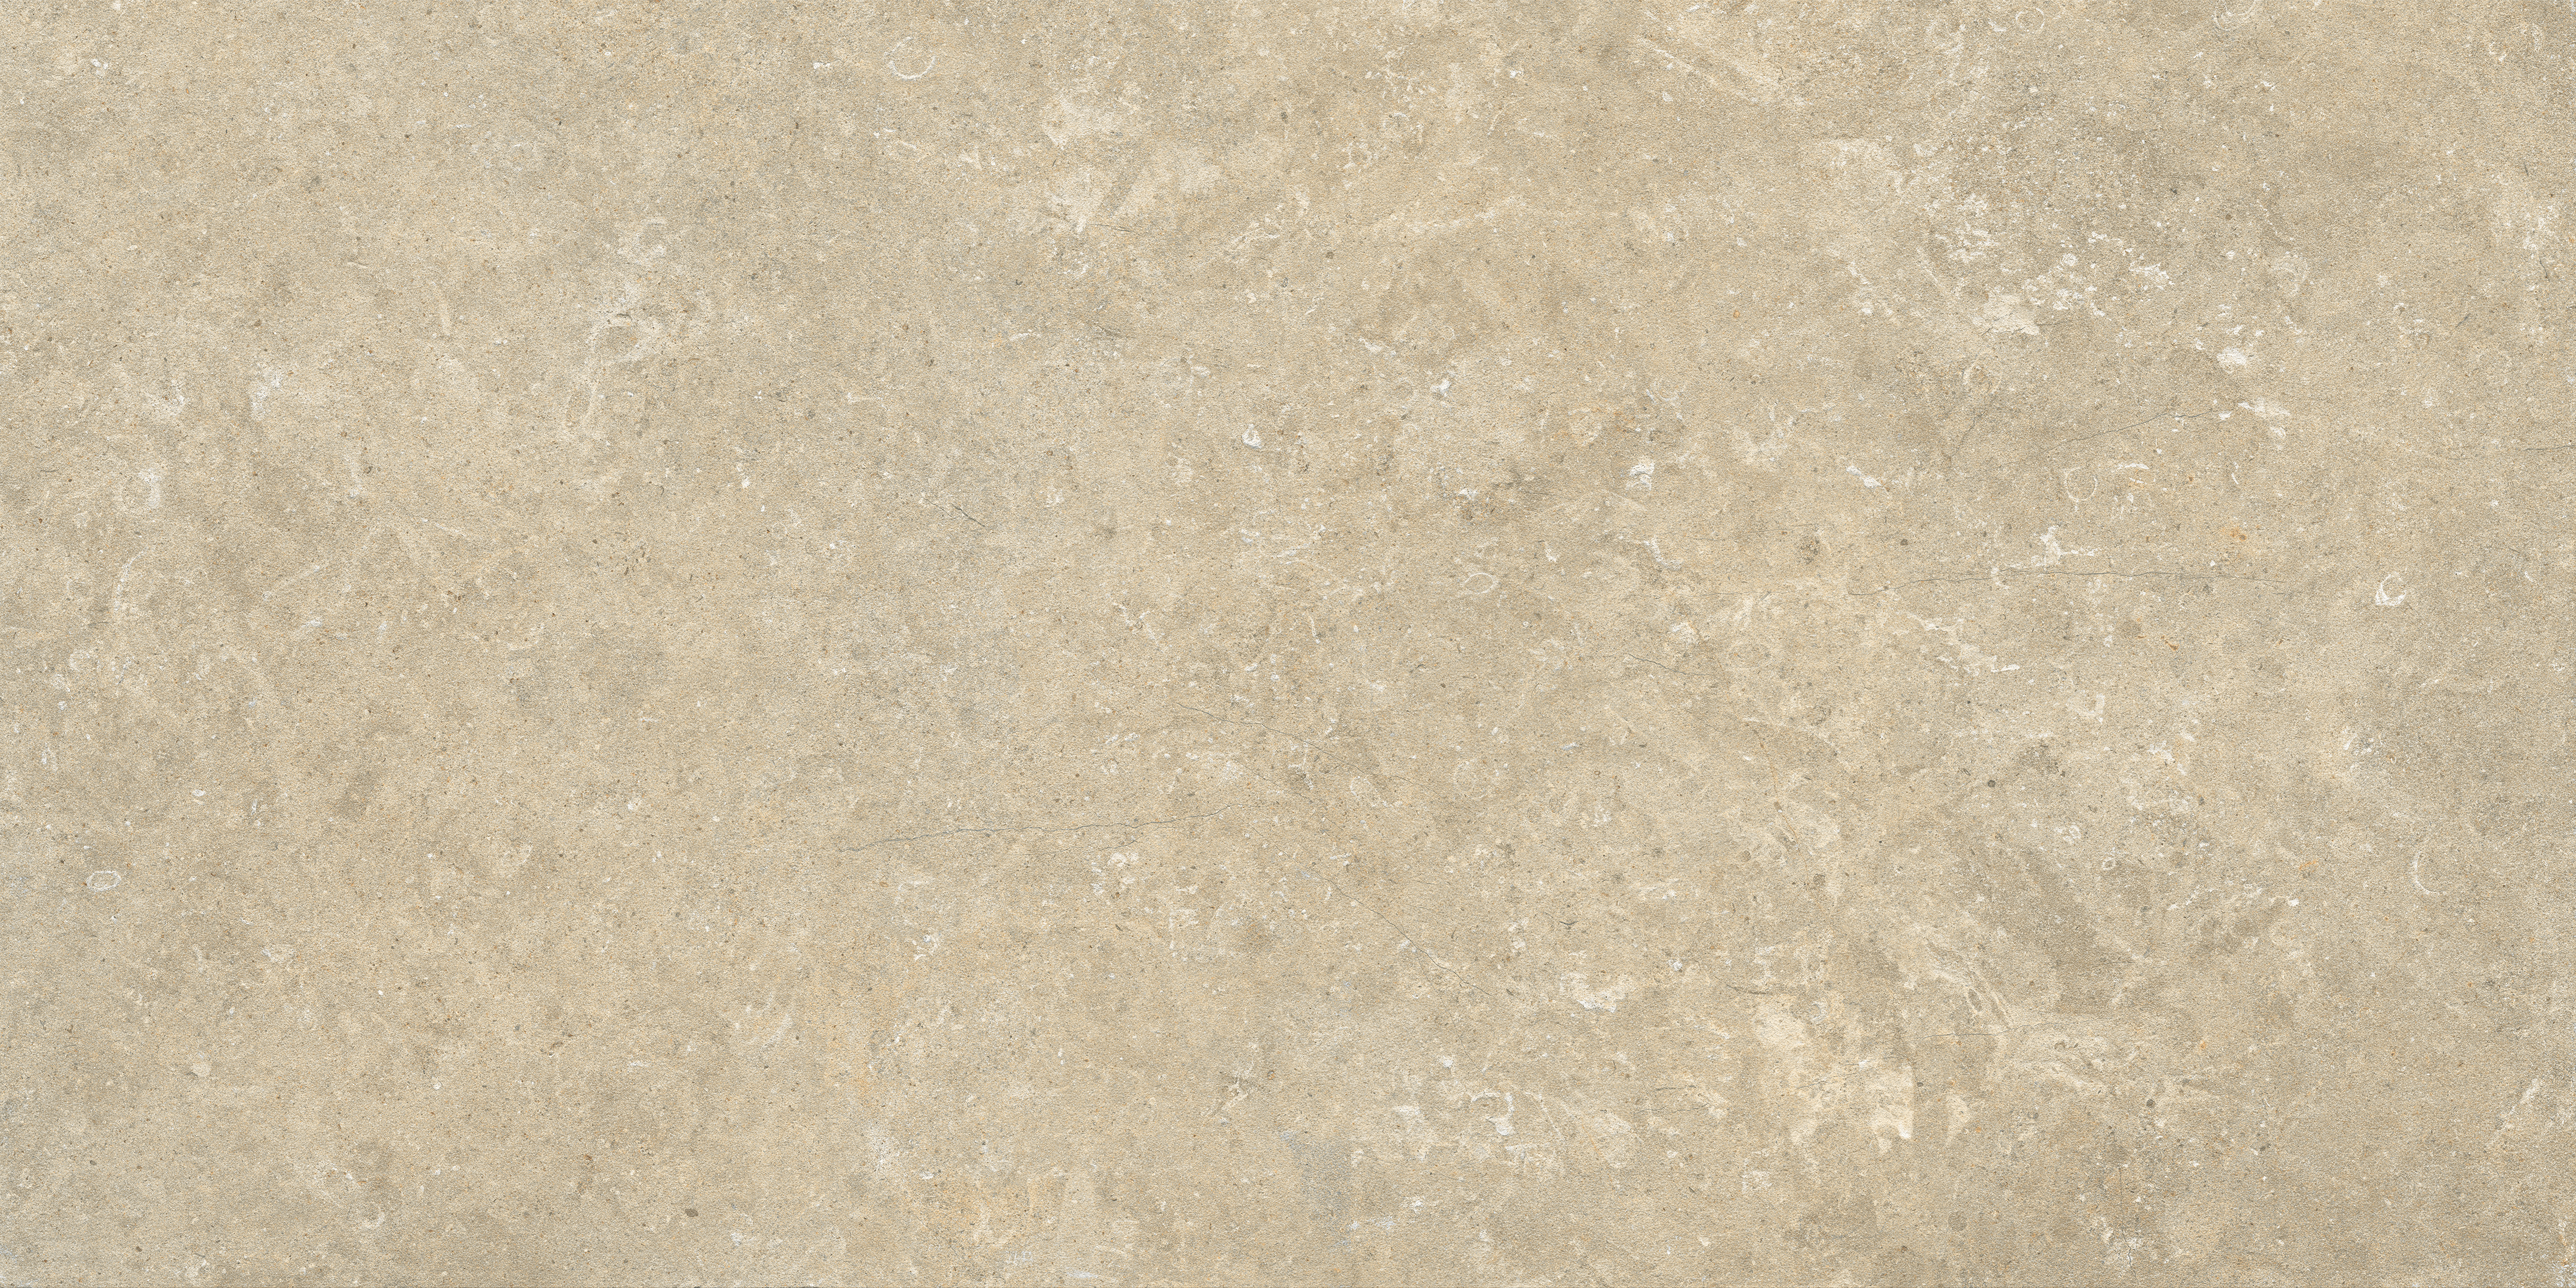 Marca Corona Arkistyle Sand Naturale – Matt Sand J212 natur matt 60x120cm rektifiziert 9mm